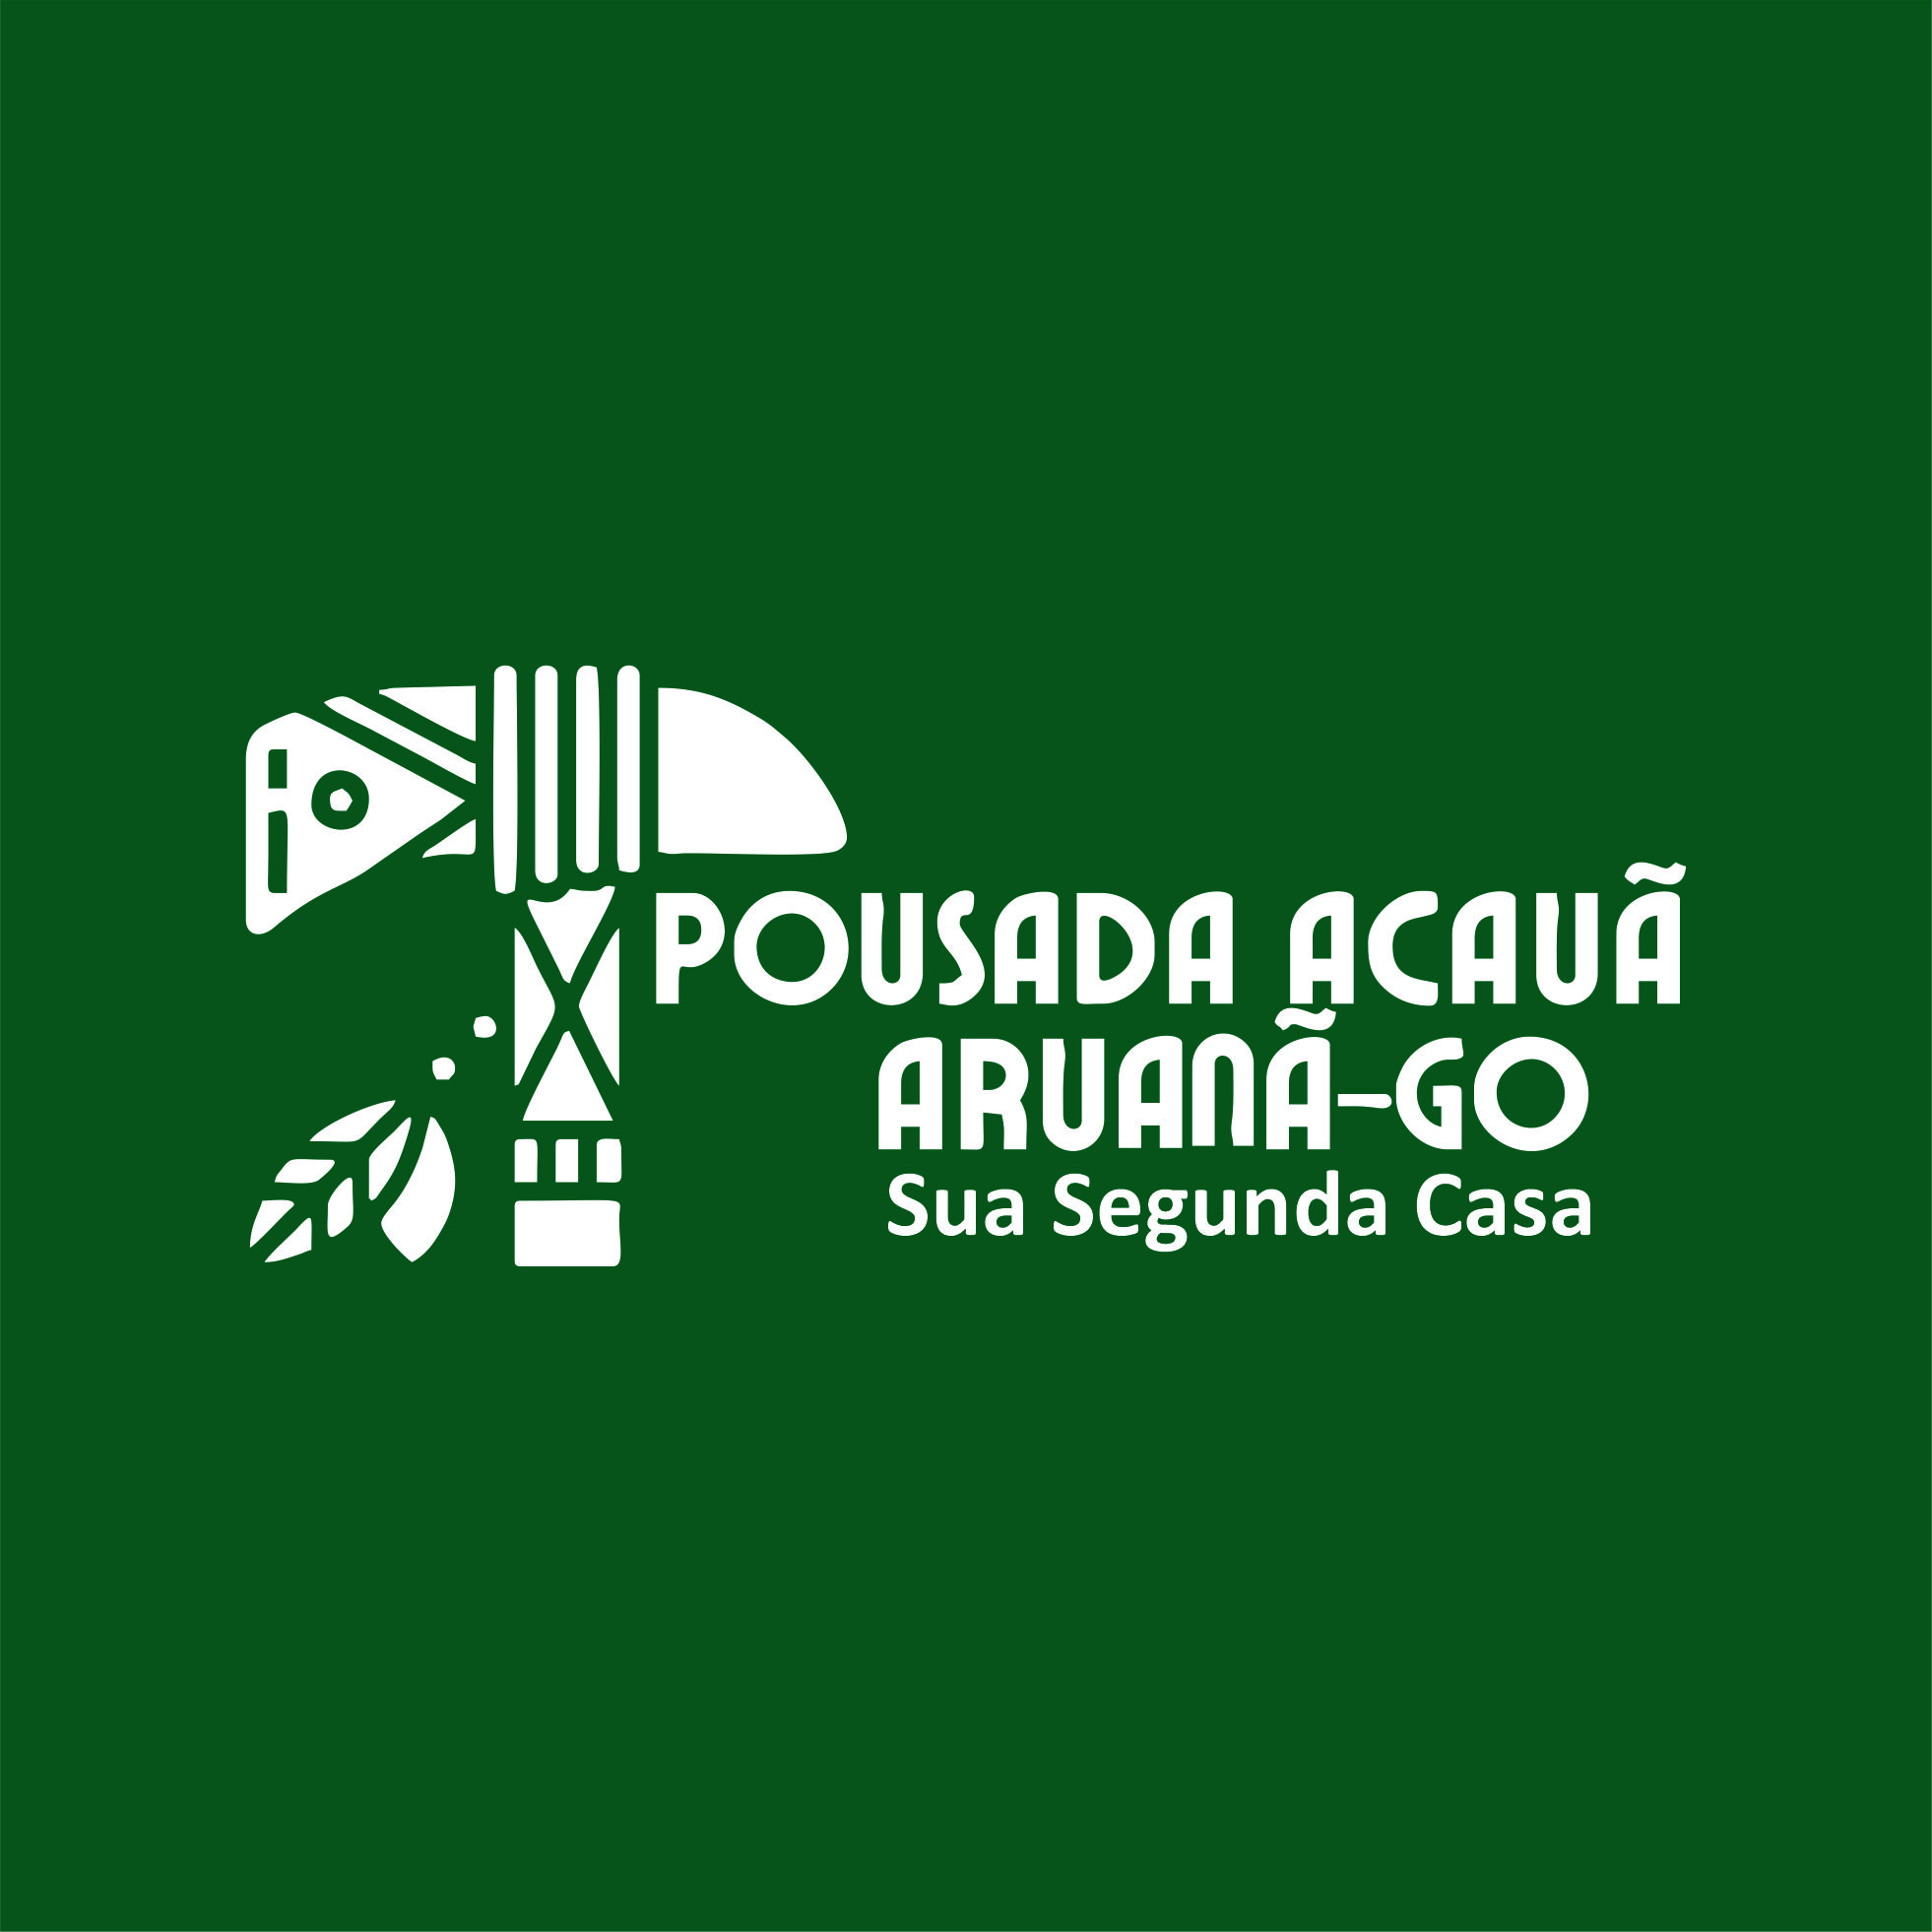 (c) Pousadaacaua.com.br